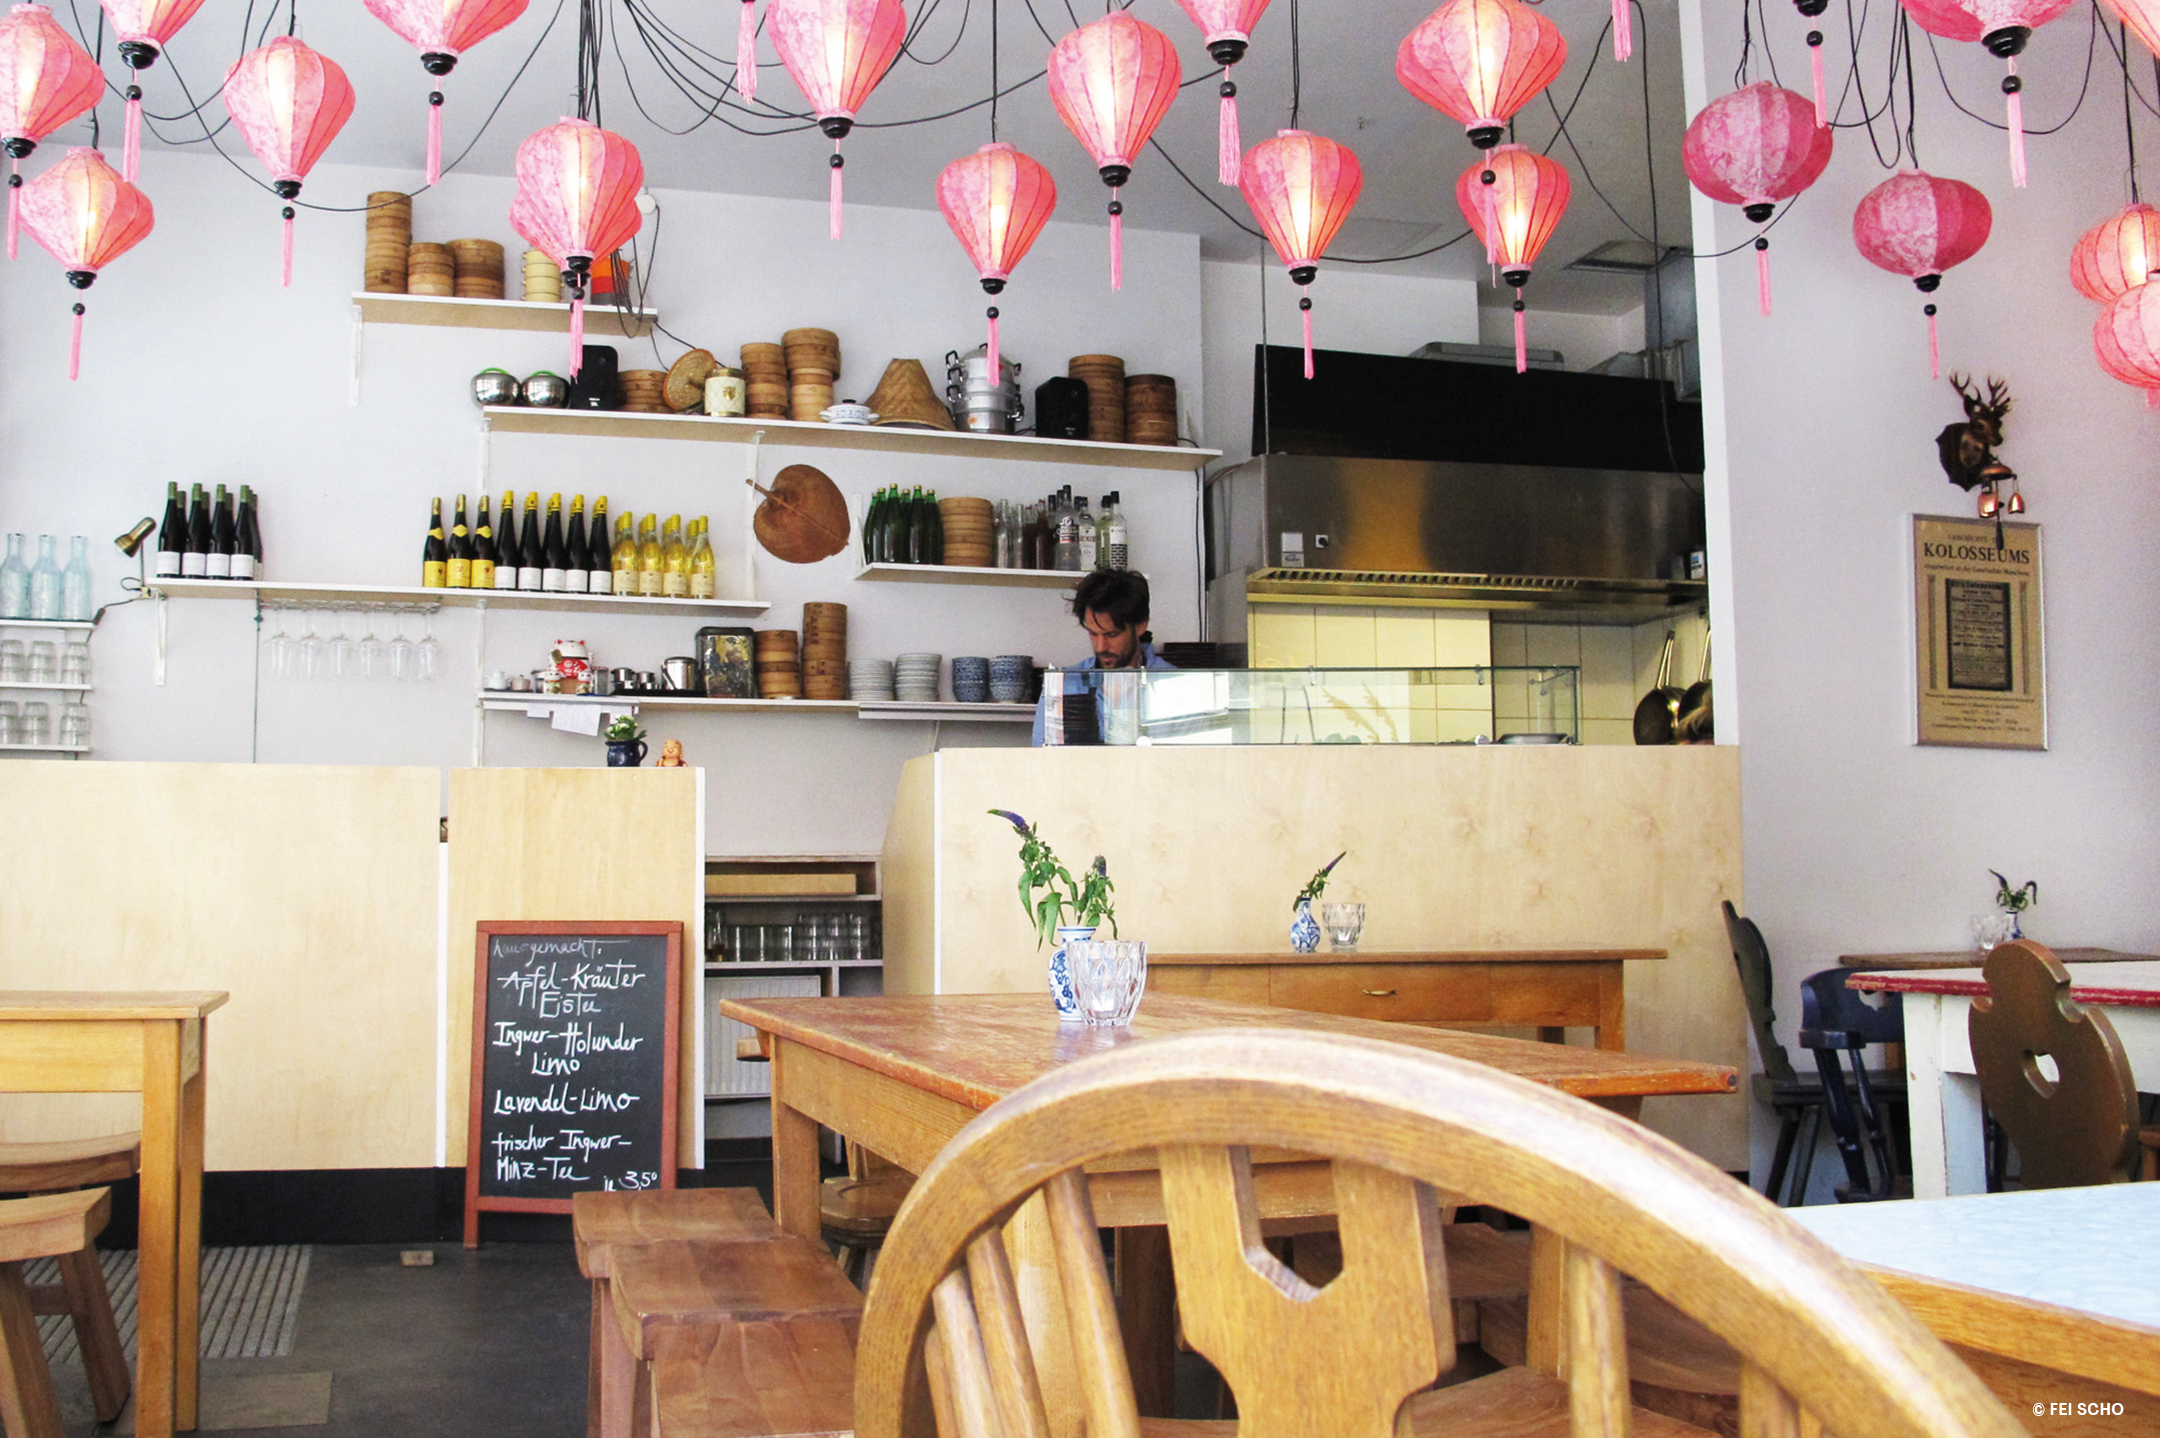 Restaurant mit traditionell anmutenden, Holzstühlen, -Bänken und -Tischen, eine Theke aus hellem Holz und rosafarbene, asiatische Lampions hängen von der Decke